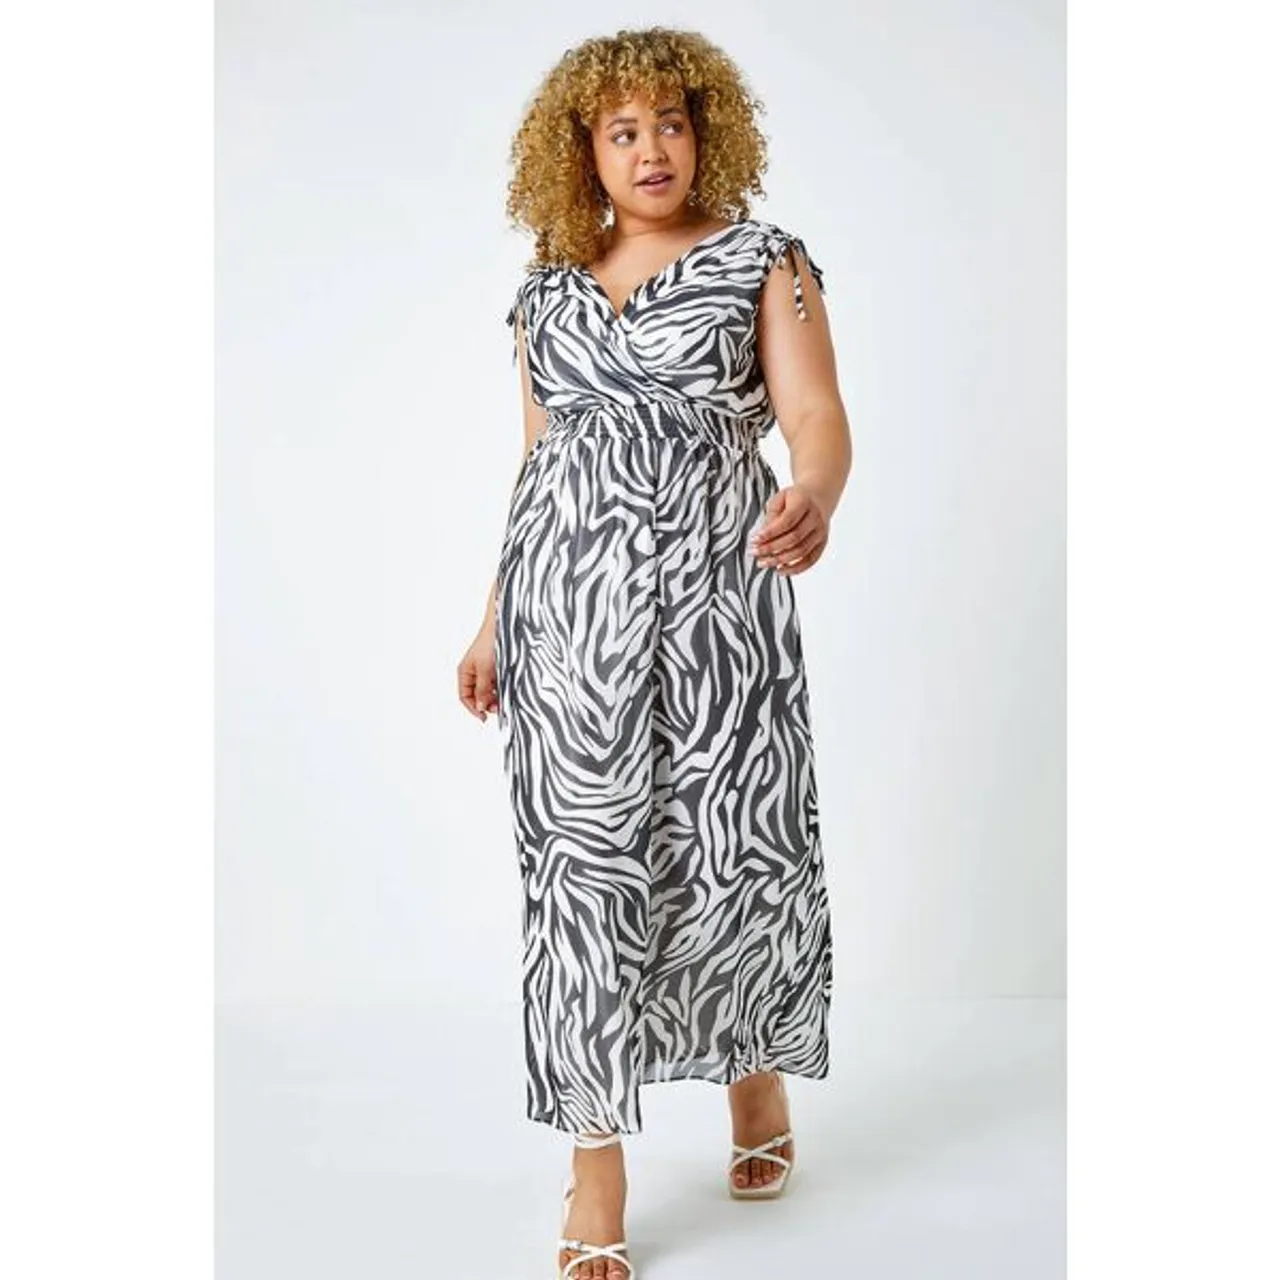 Roman Curve Roman Originals Curve Zebra Print Shirred Stretch Maxi Dress in Black - Size 3032 3032 female